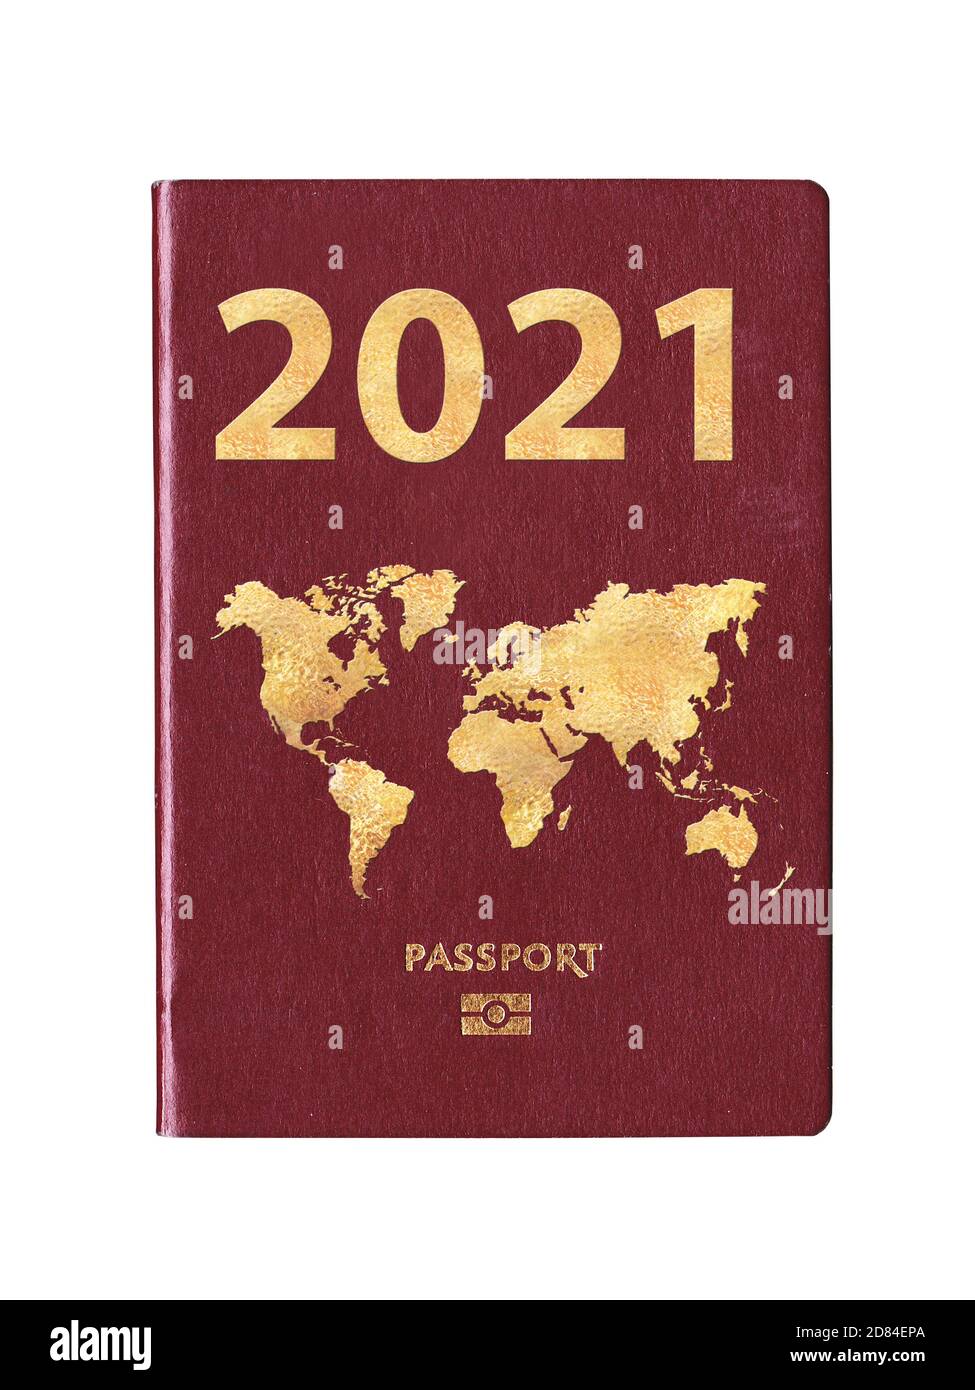 Passport 2021 con una mappa del mondo sulla copertina, concetto di viaggio Foto Stock